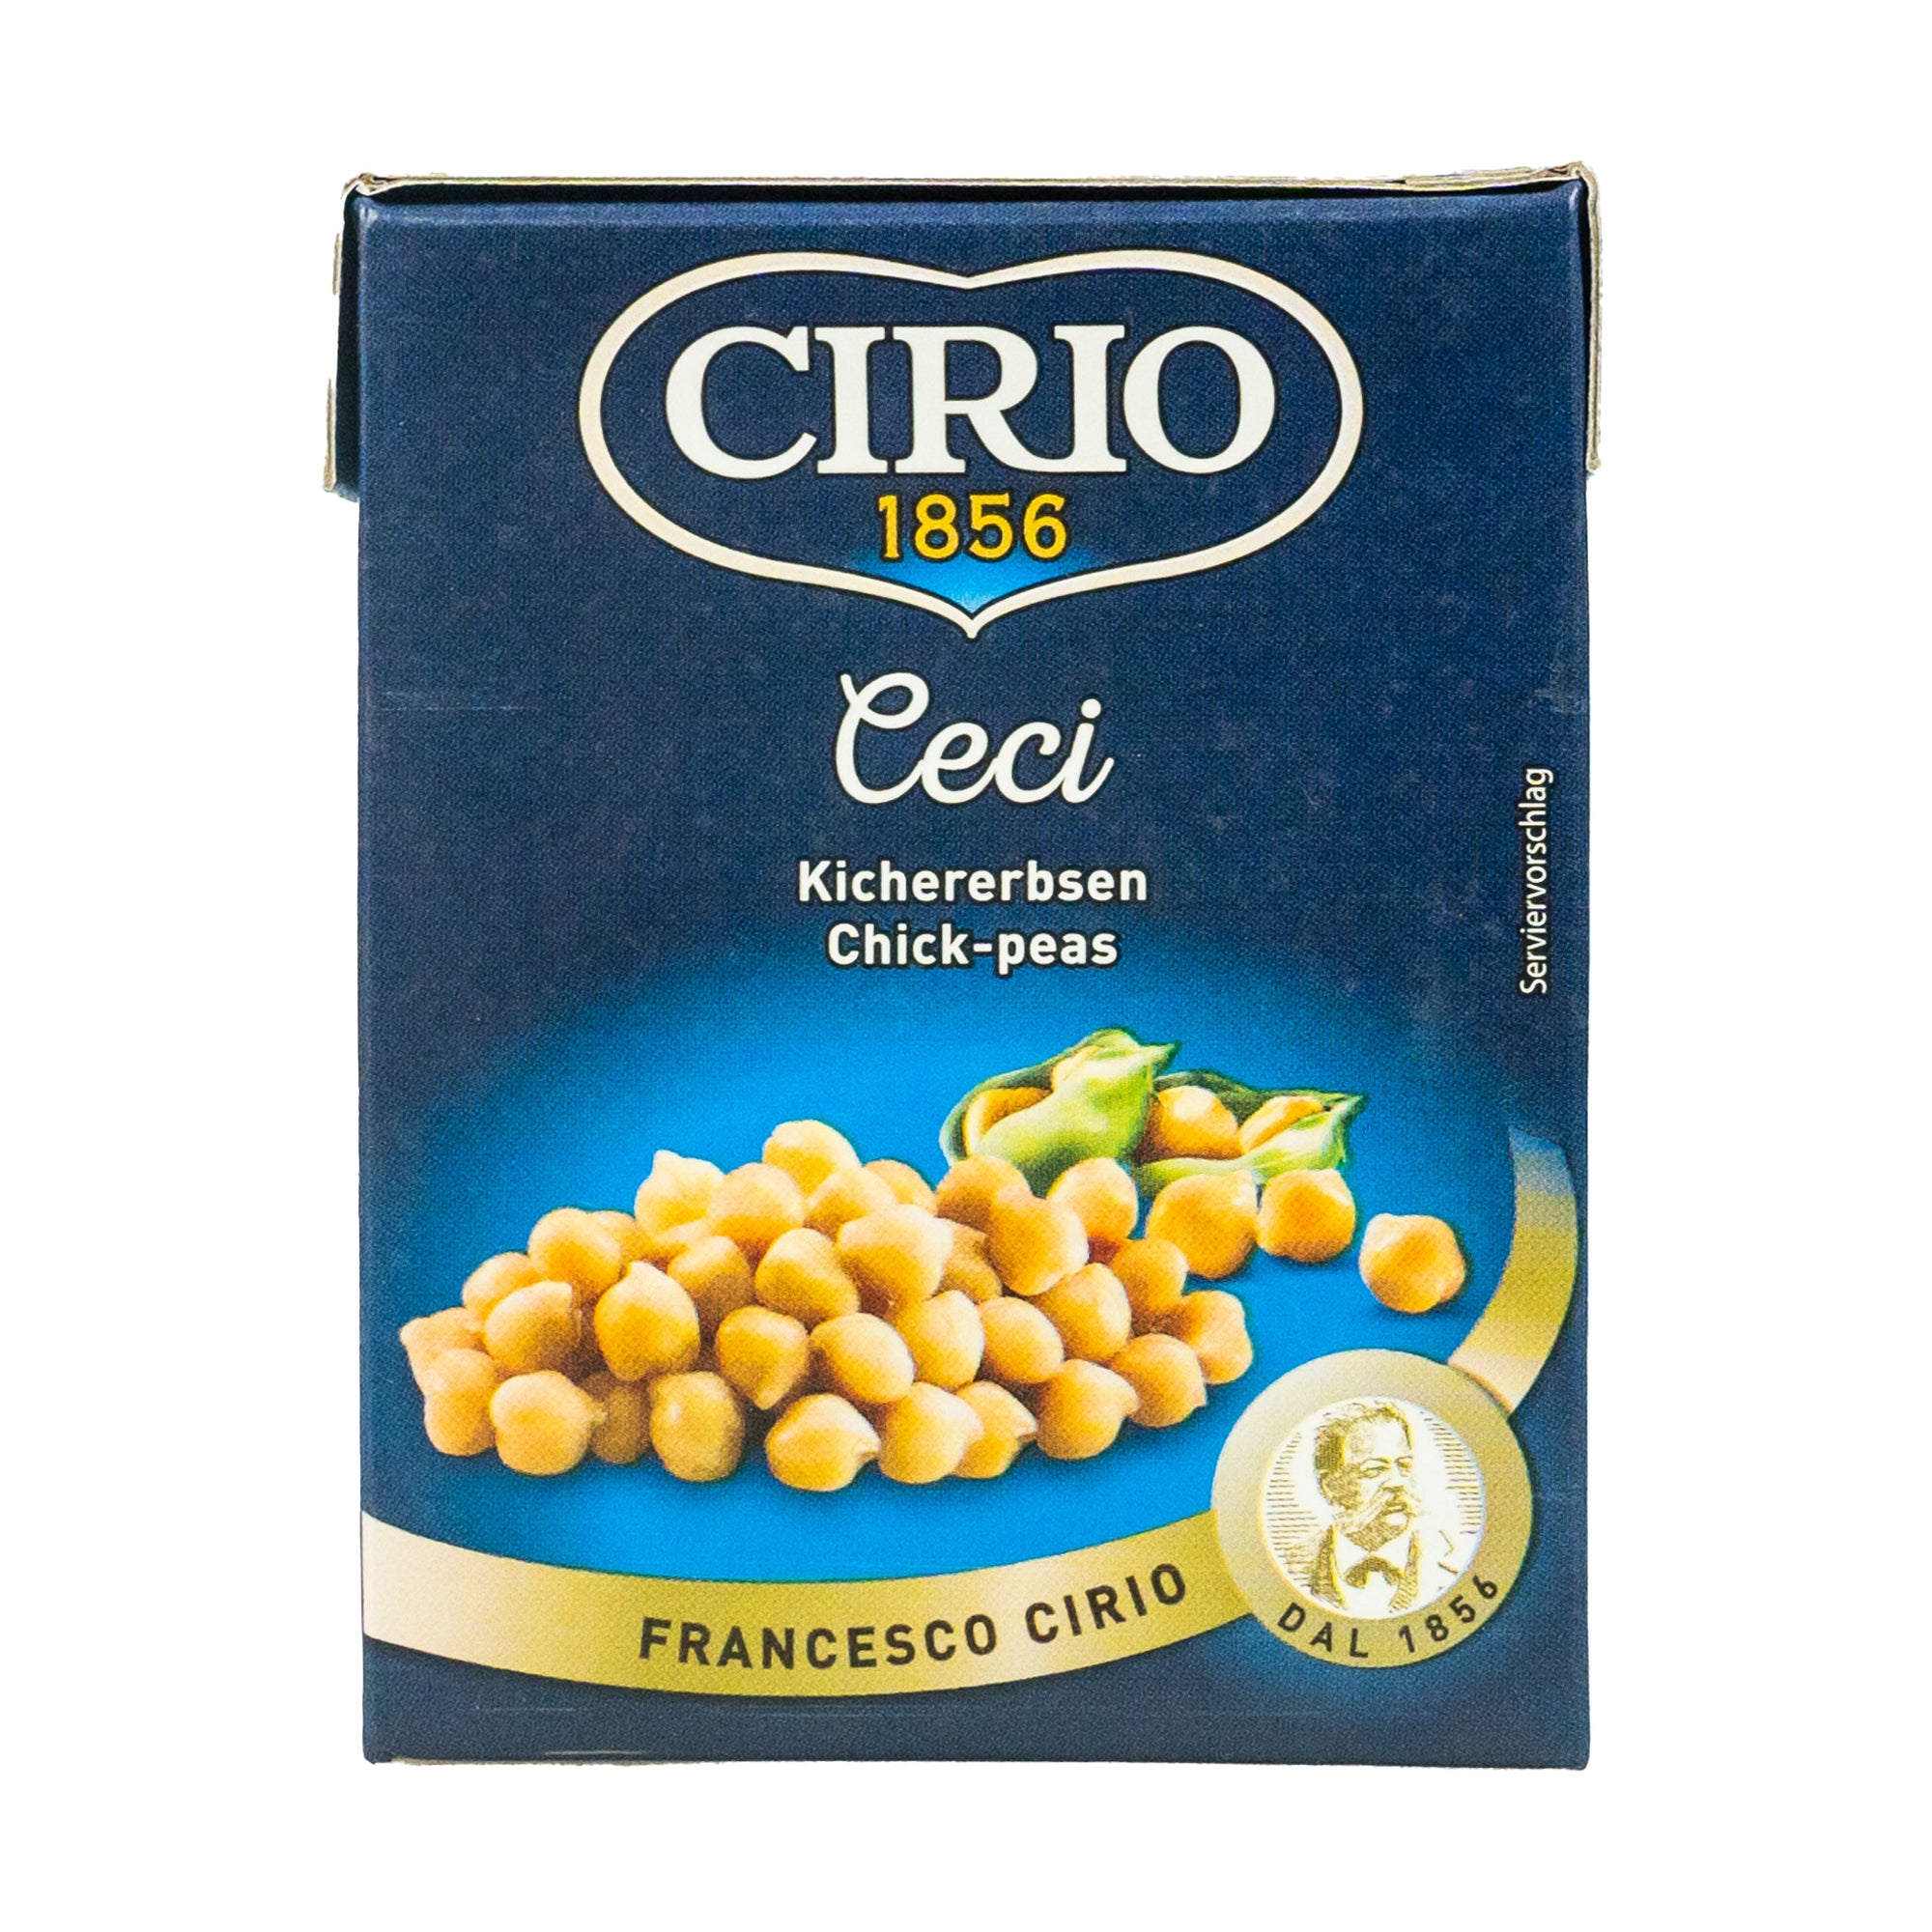 CIRIO - CHICK PEAS - 380g - Jet Italian Deli - JID-DR-LO - EWTH - Italian food - Italian grocery - Food delivery - Thailand - Wine - Truffle - Pasta - Cheese